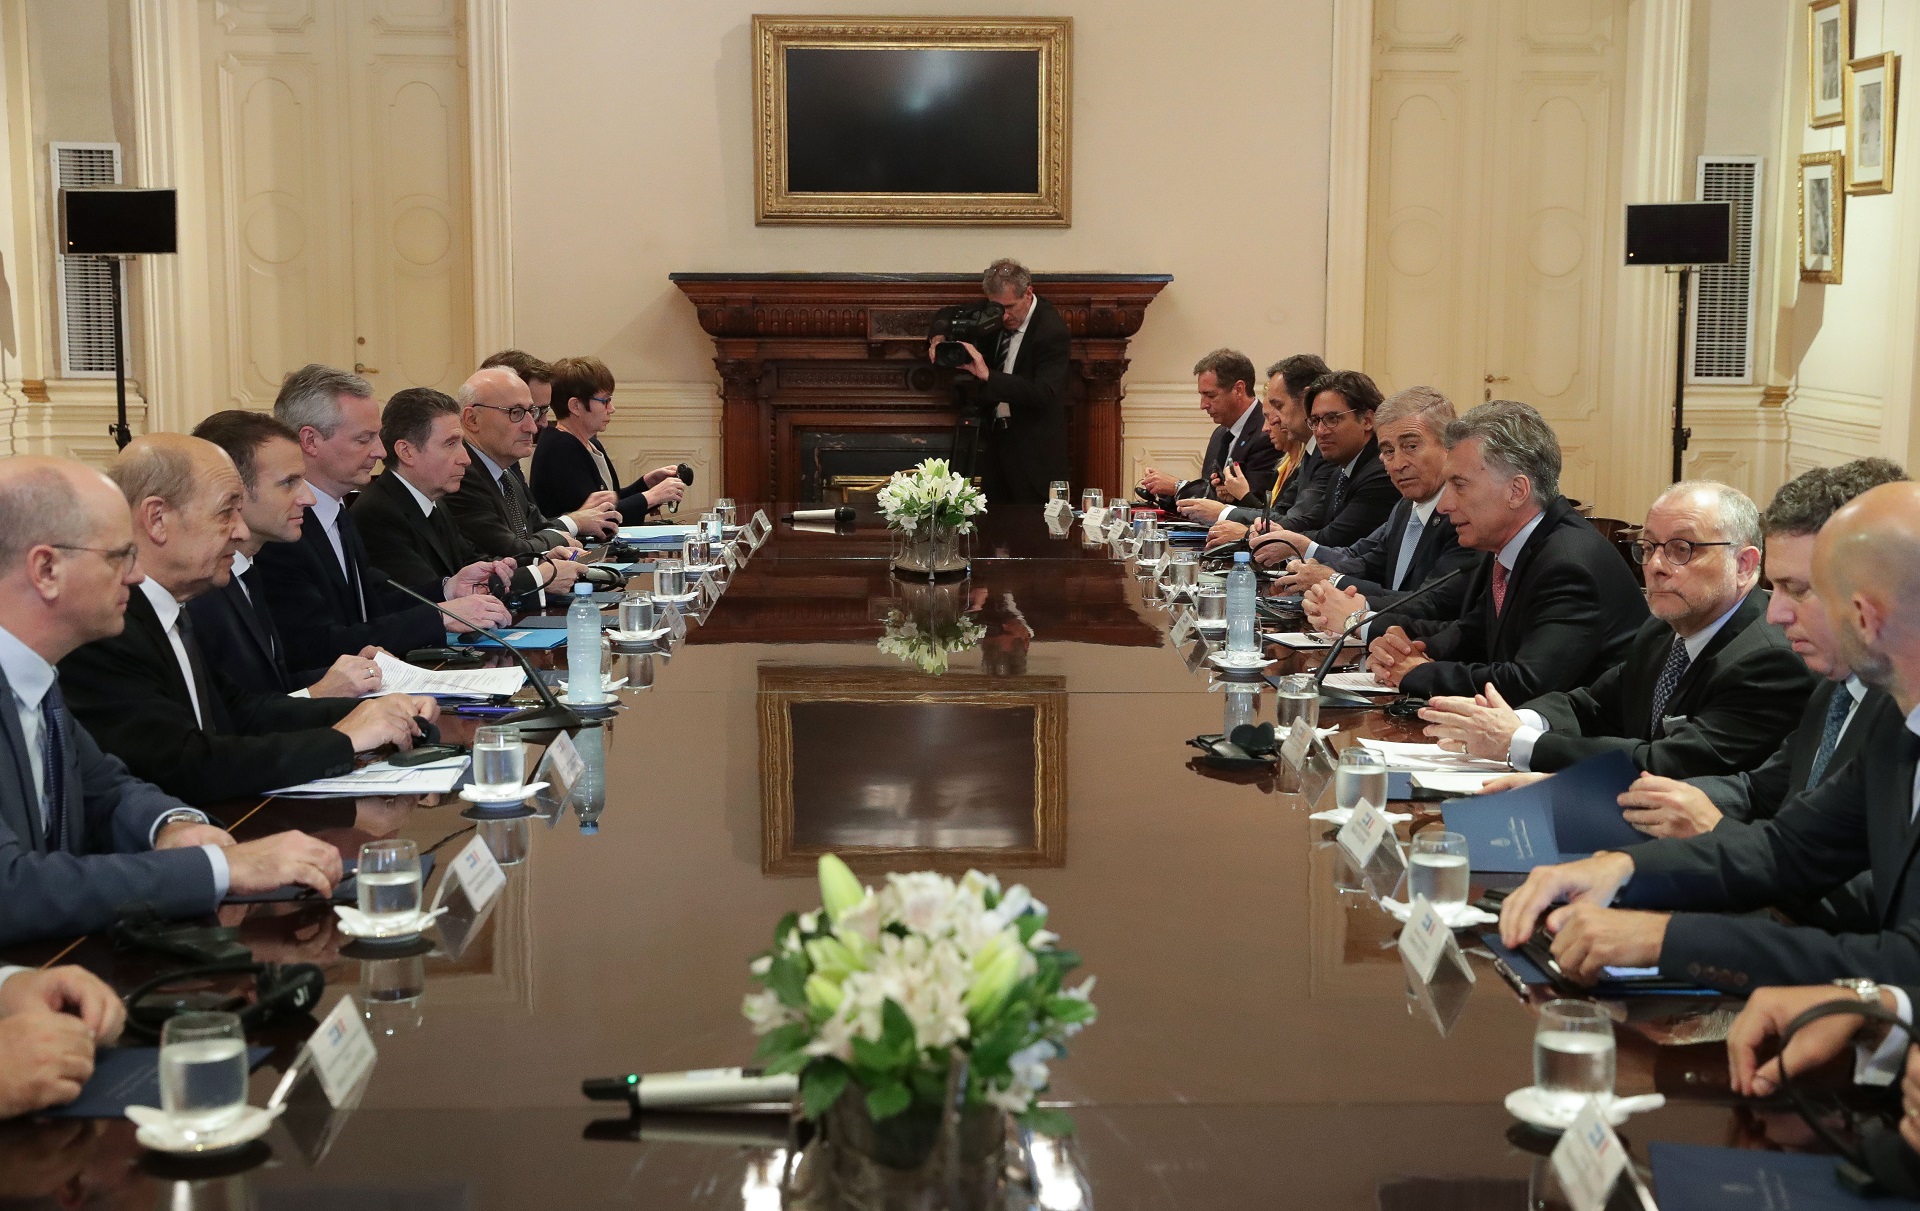 El presidente Macri recibió en la Casa Rosada a su par de Francia